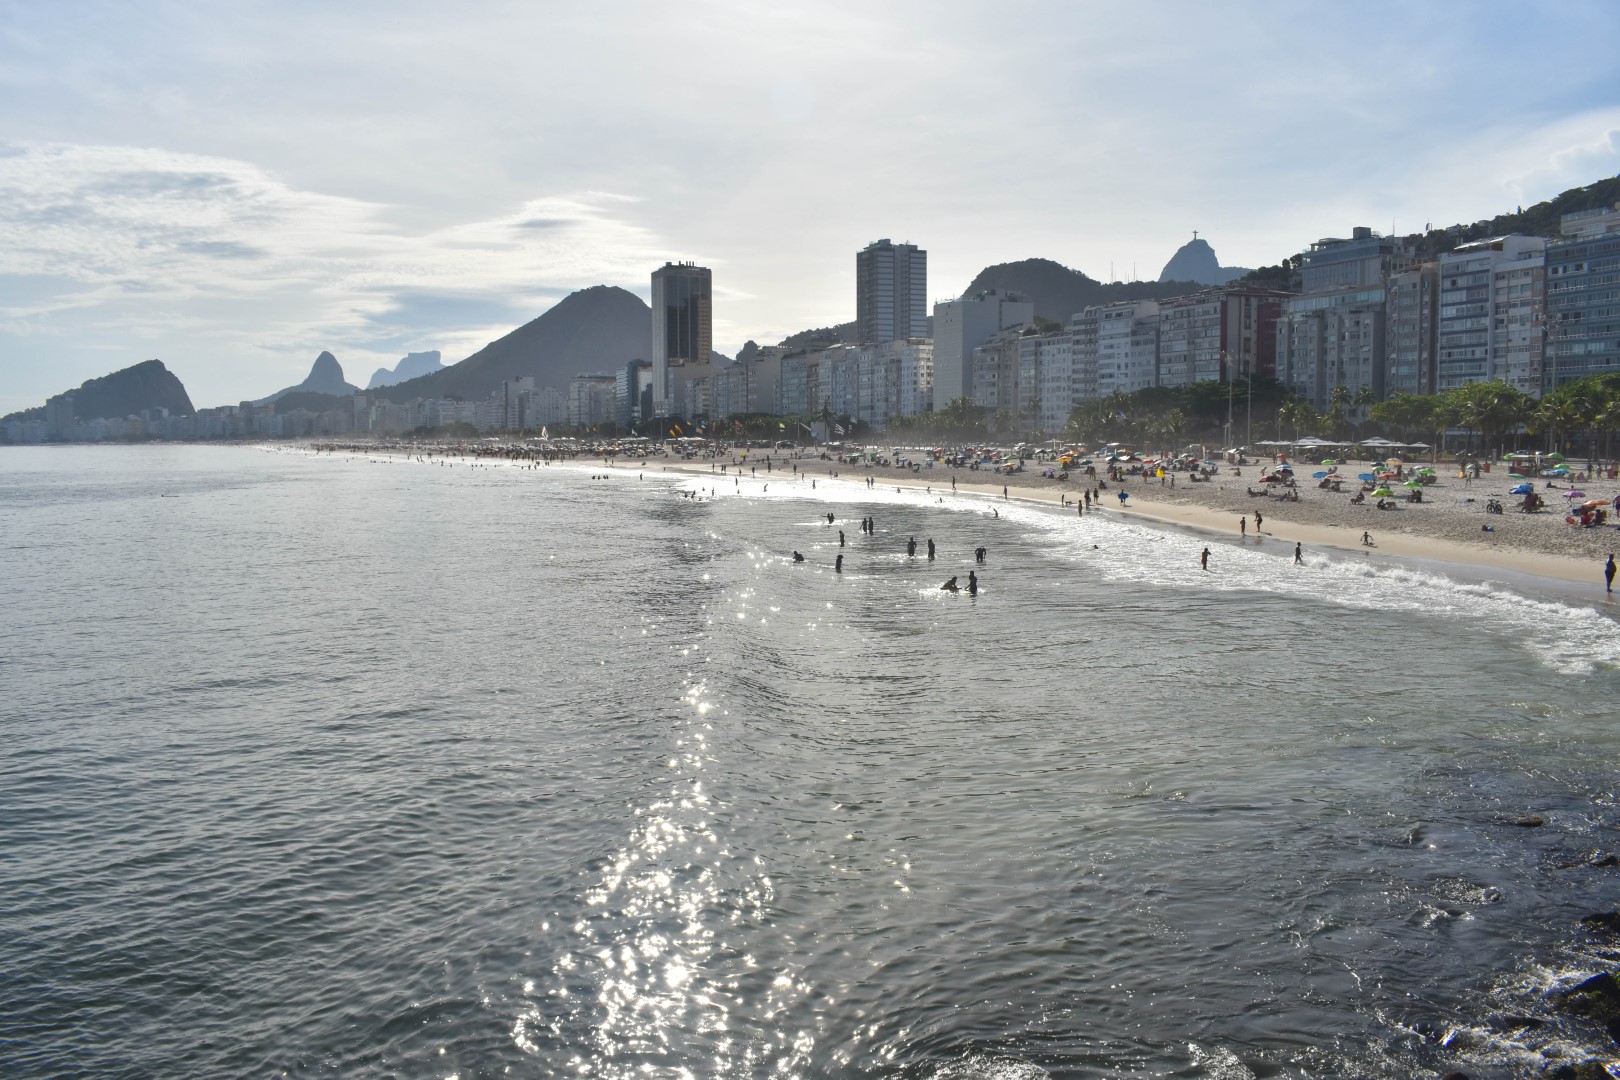 Praia de Copacabana from Leme, Rio de Janeiro